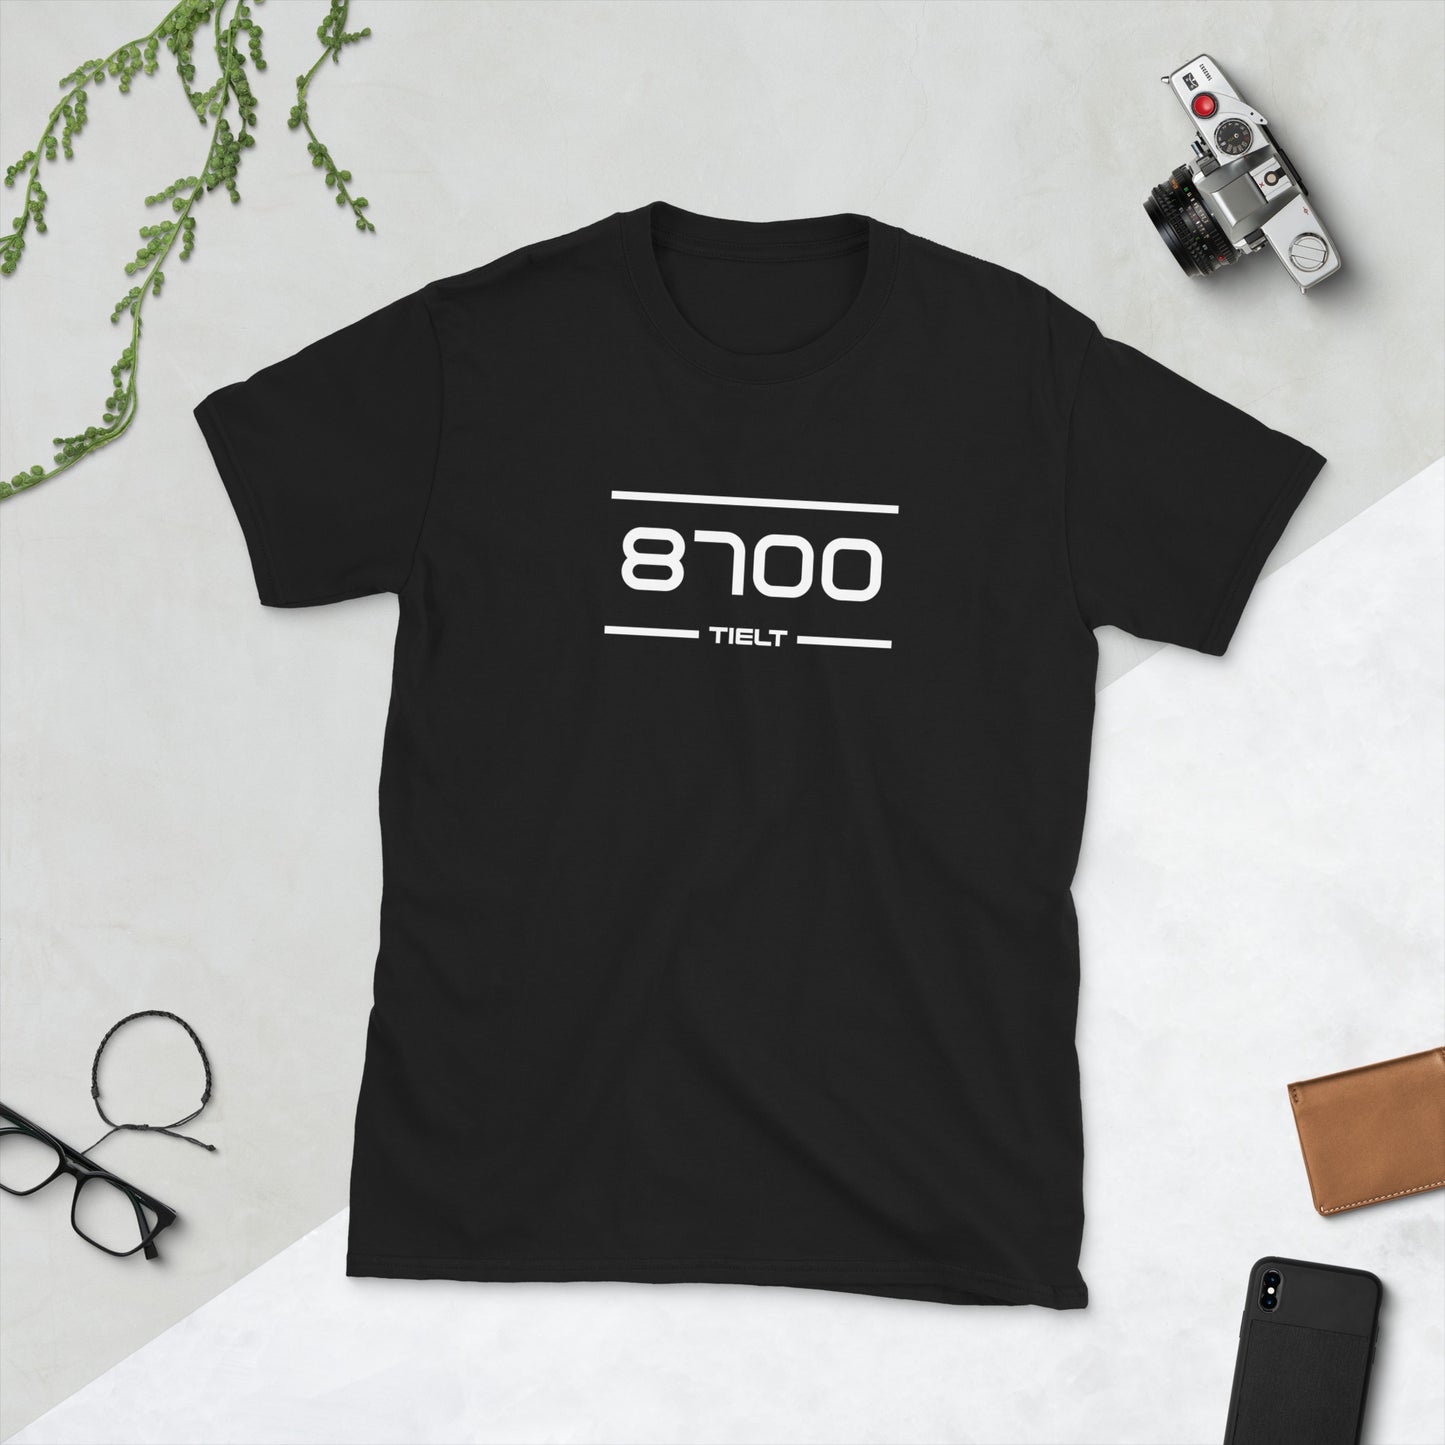 Tshirt - 8700 - Tielt